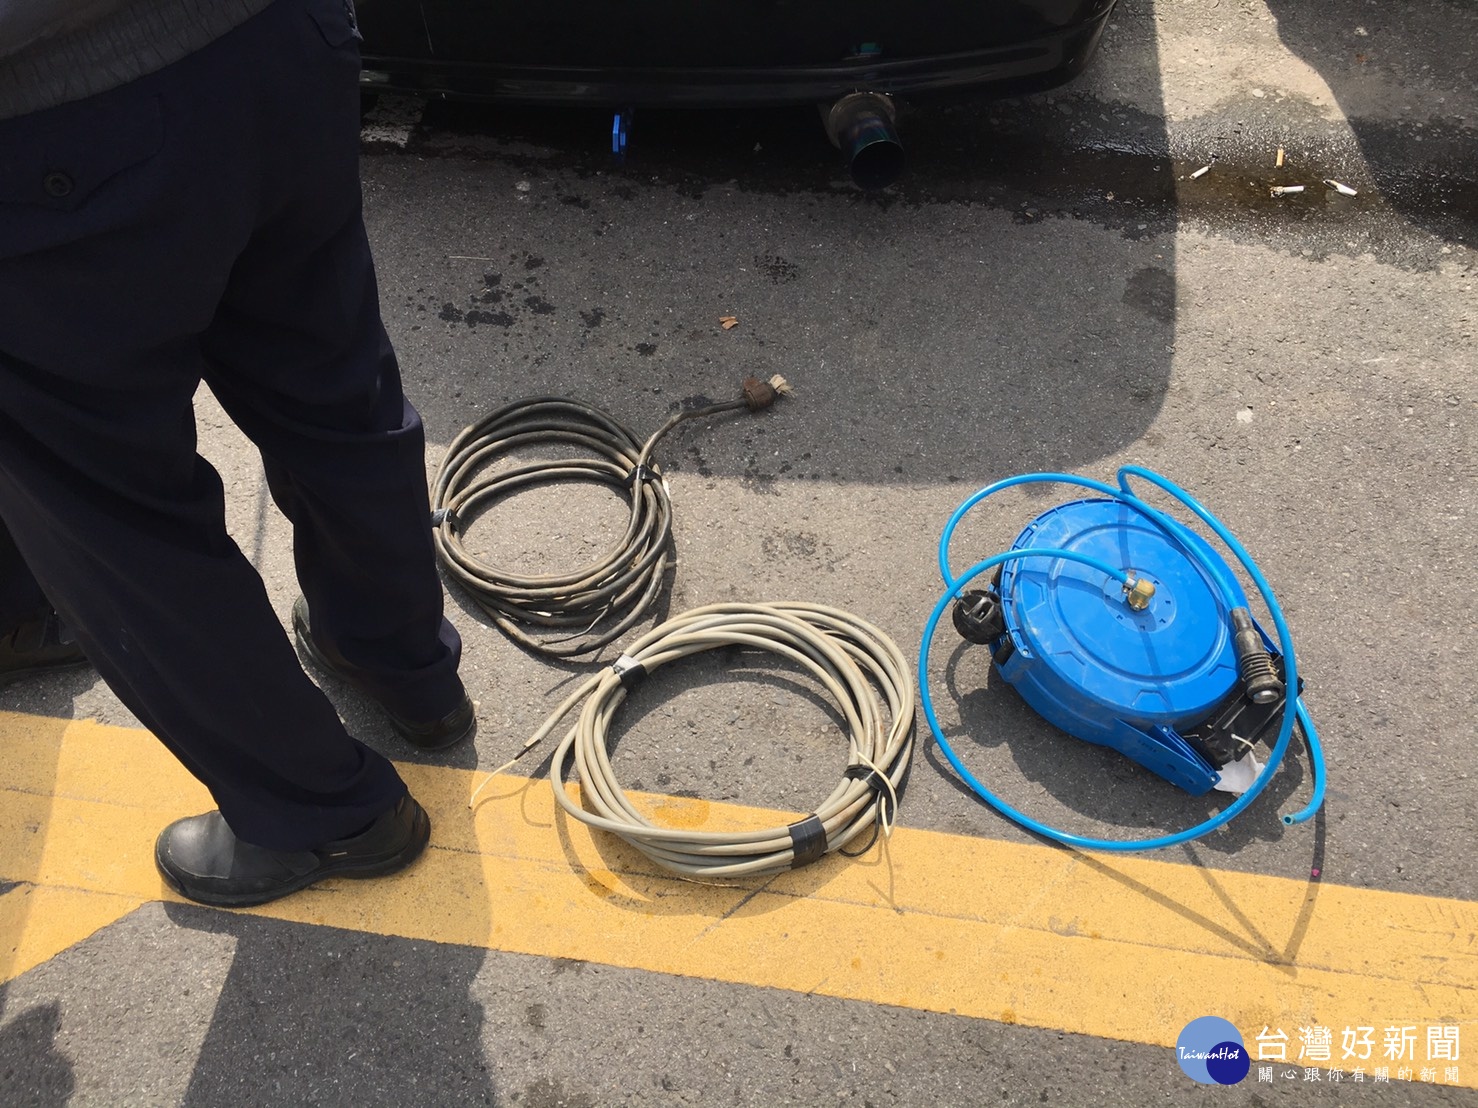 警方在車上查獲得手之工具及電線一批。